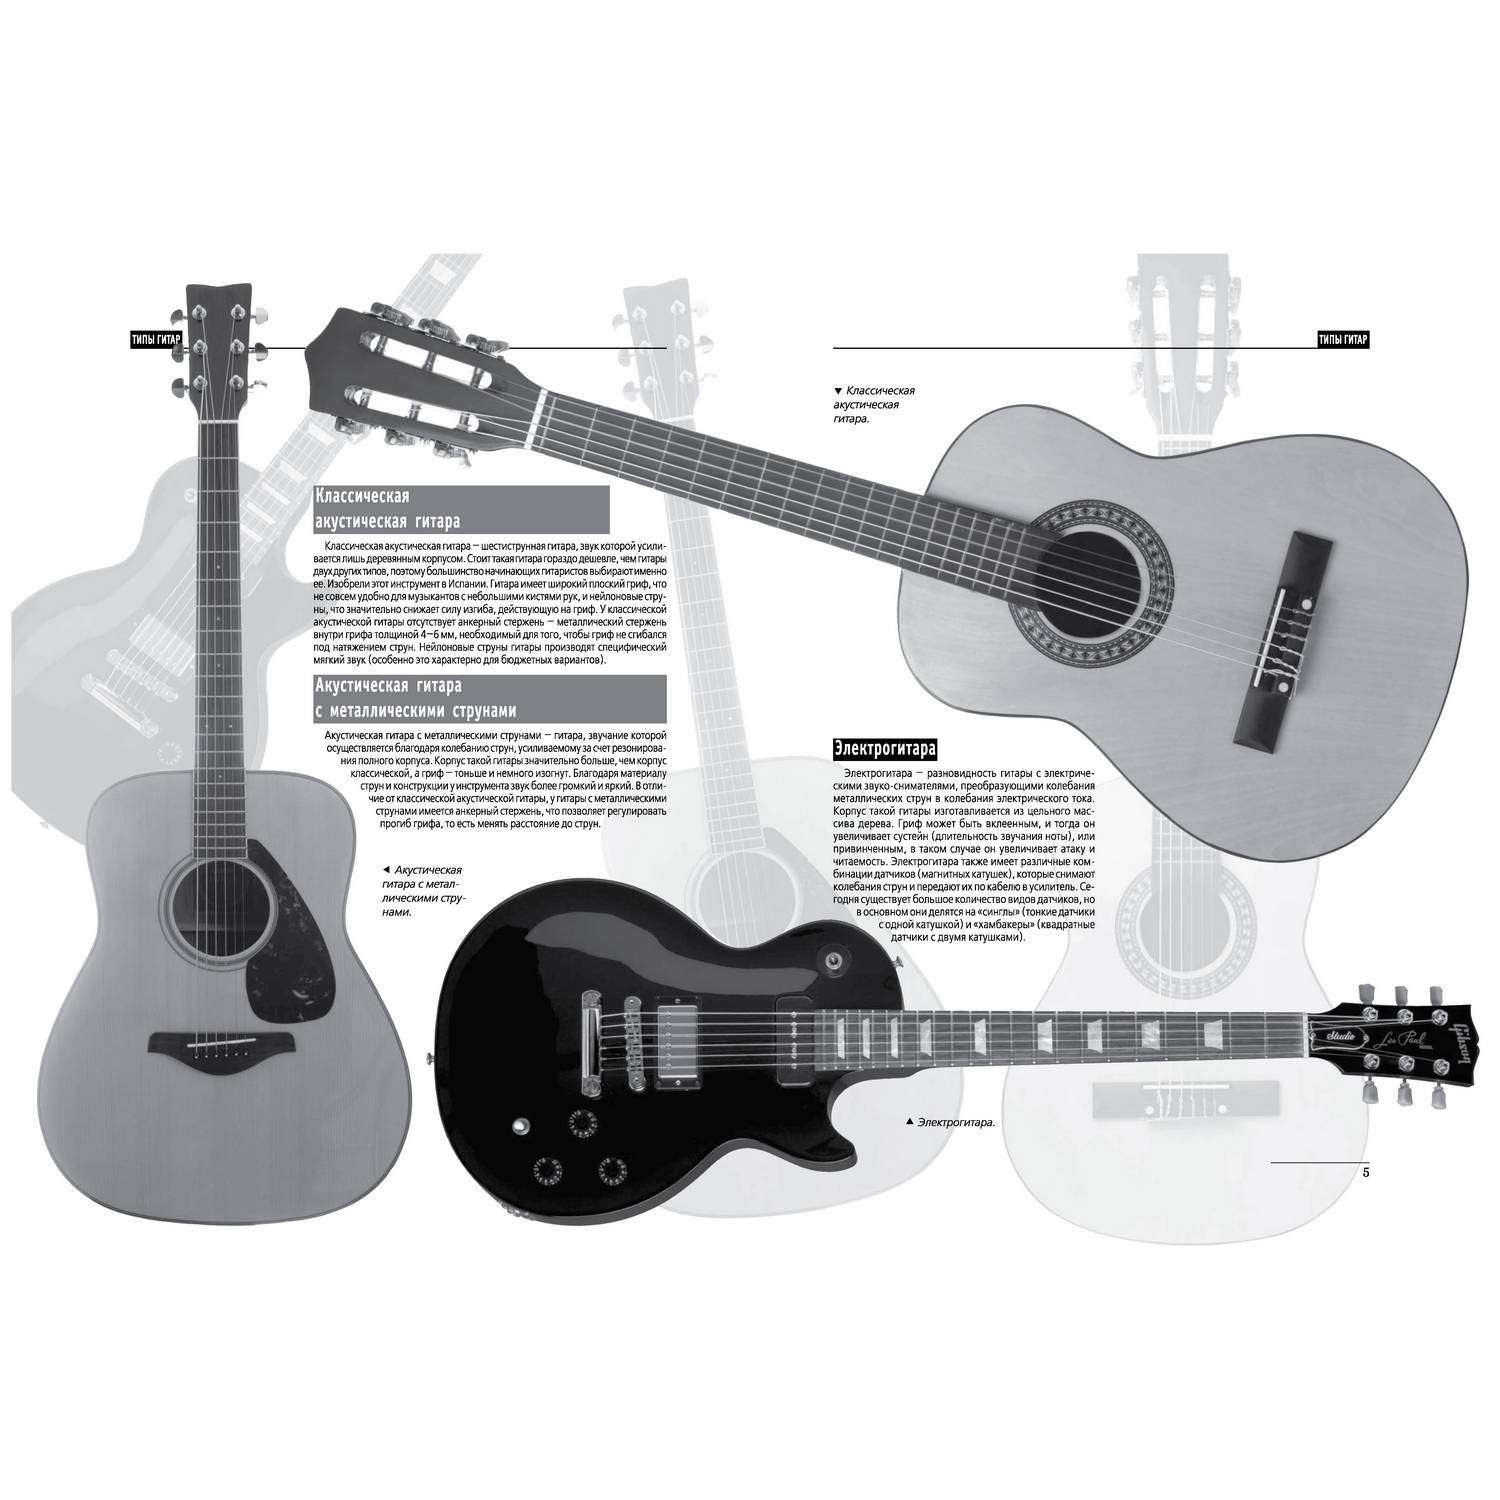 Как научиться играть на гитаре с помощью приложений и веб-сервисов - Лайфхакер